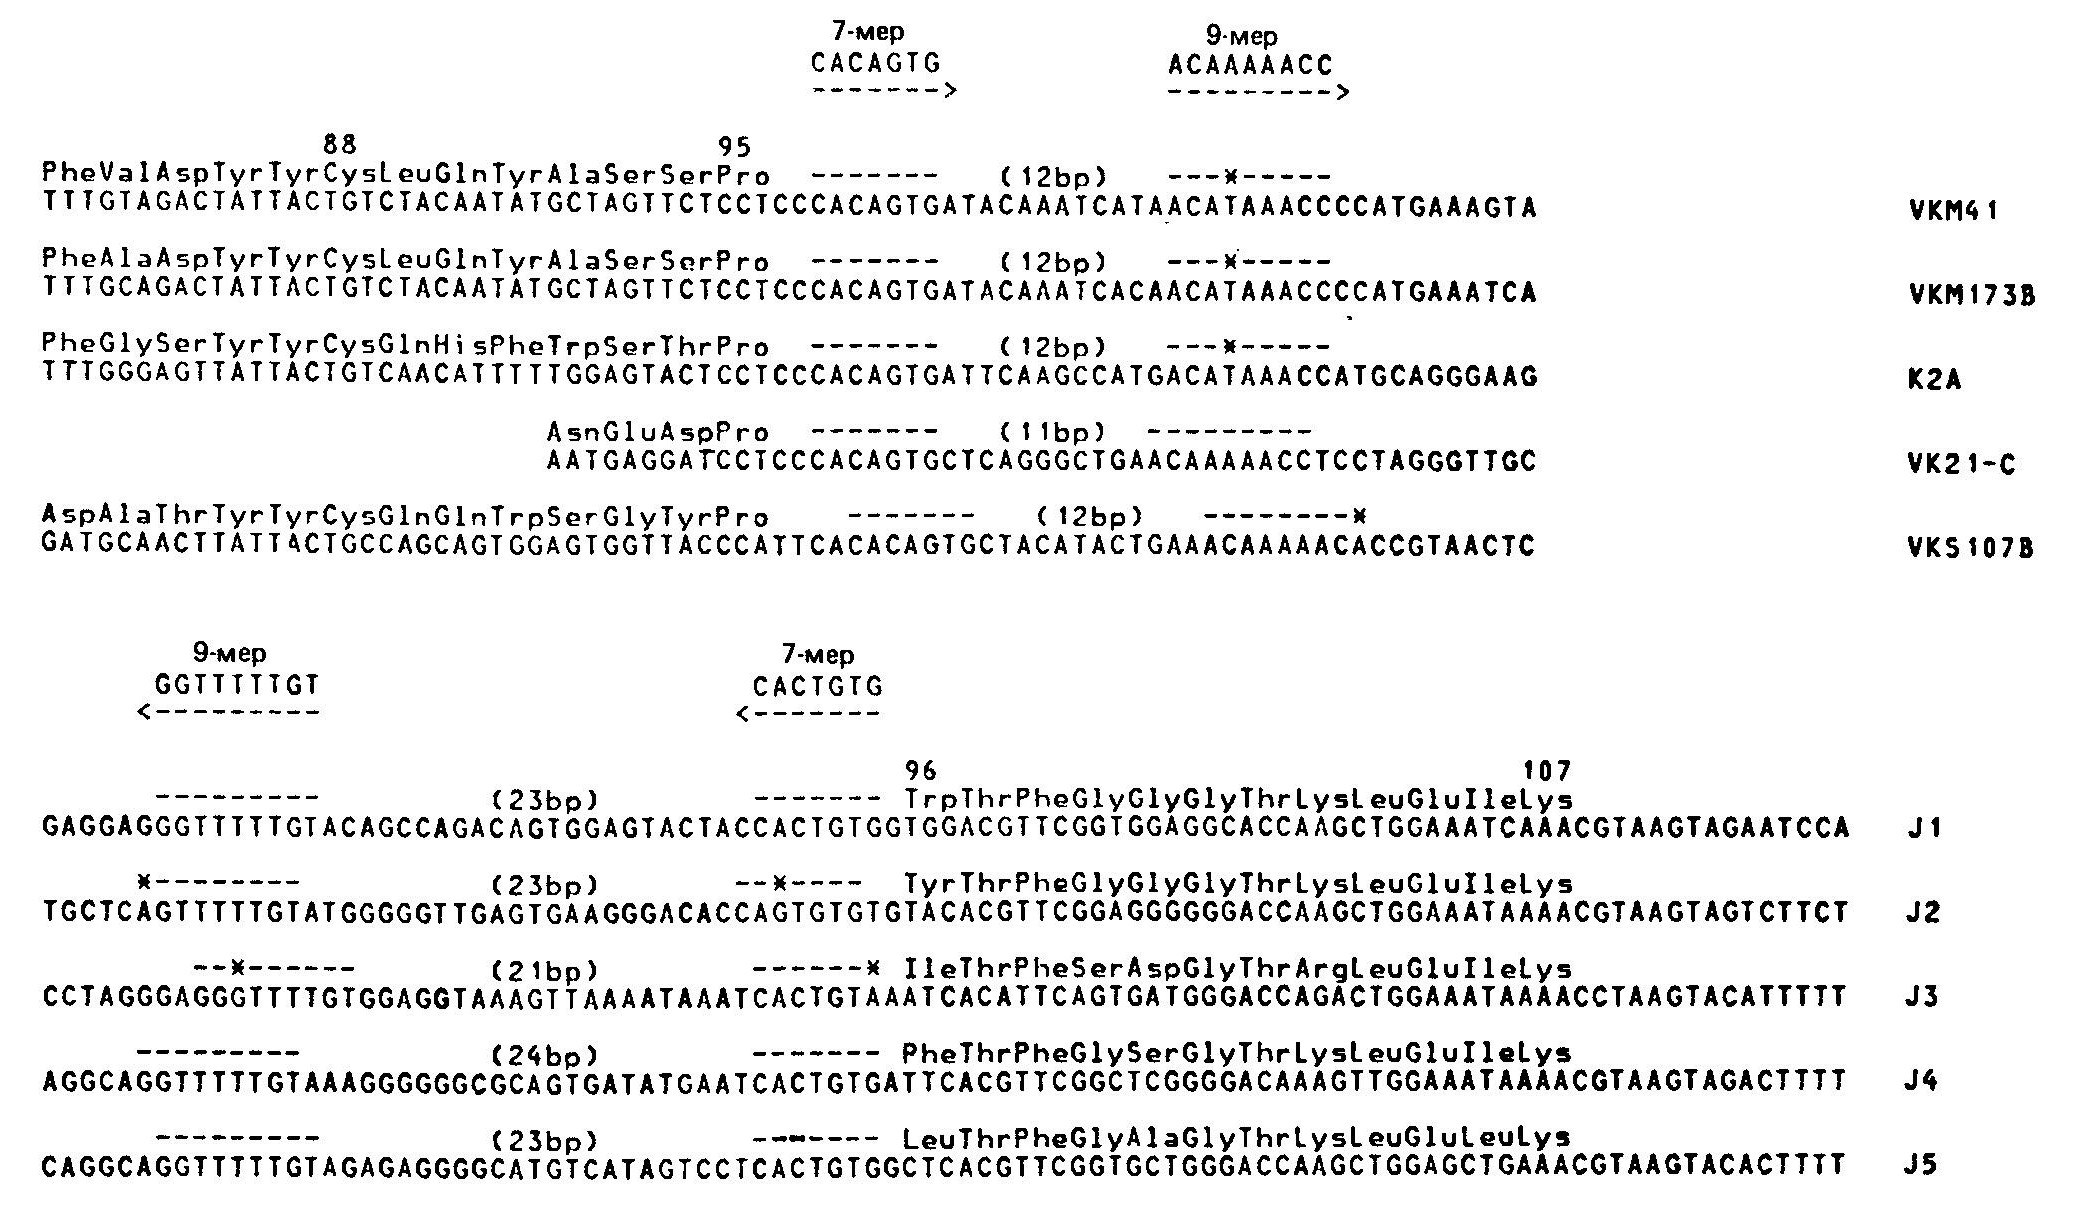 Гомологичные элементы, прилегающие (фланкирующие) к гаметным V- и J-генам.